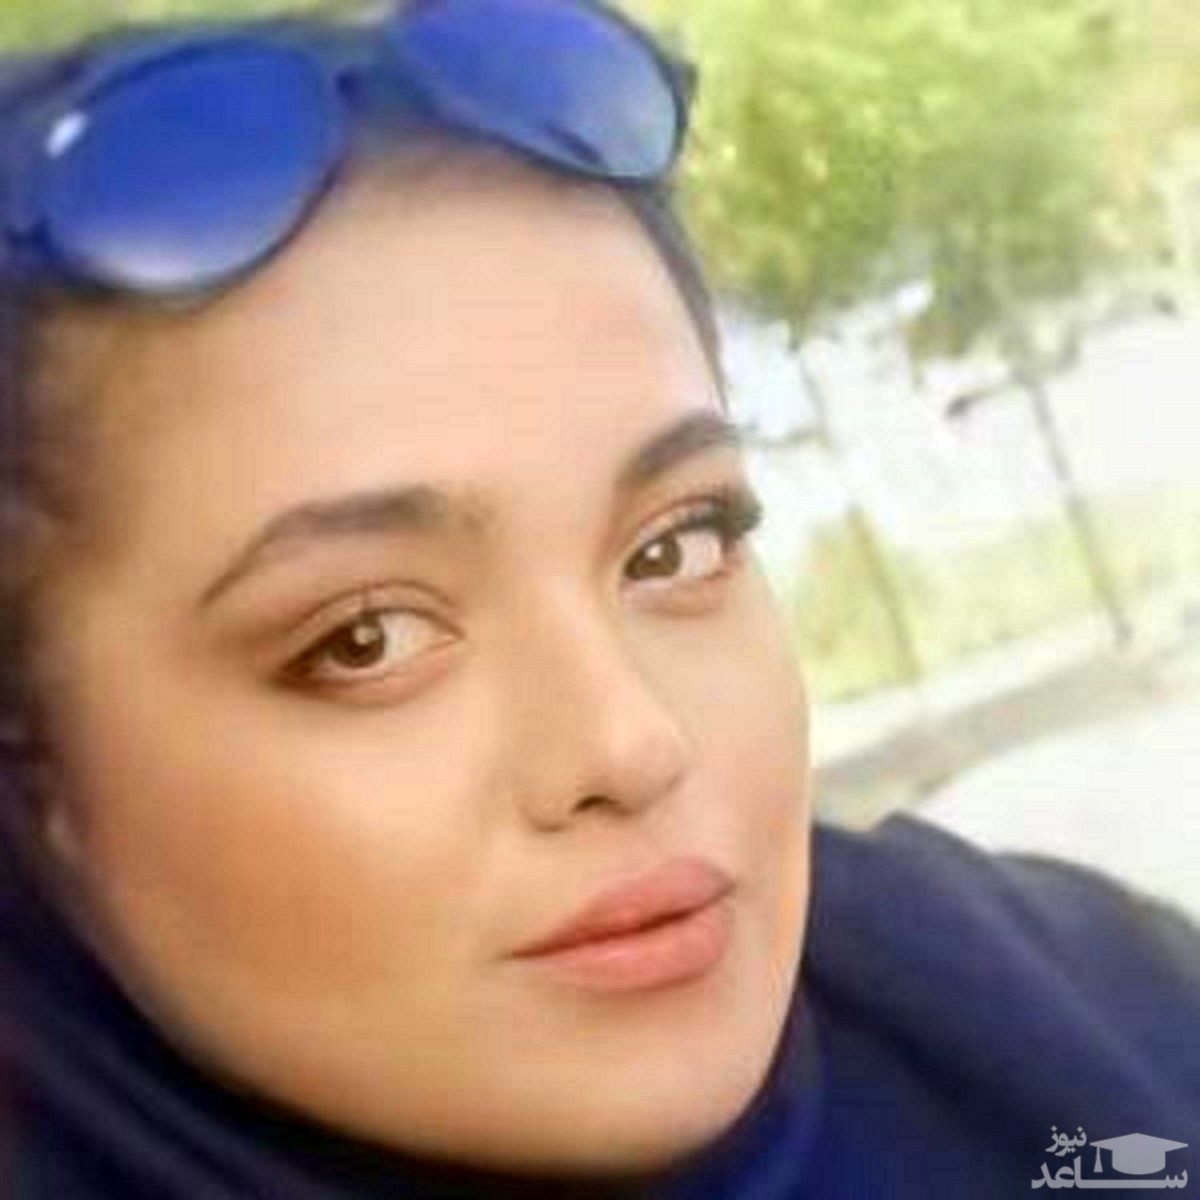 (فیلم) 48 روز بی خبری از سمای 22 ساله/ صحبت‌های دلخراش پدری که دخترش به طور مشکوکی در شیراز ربوده شد